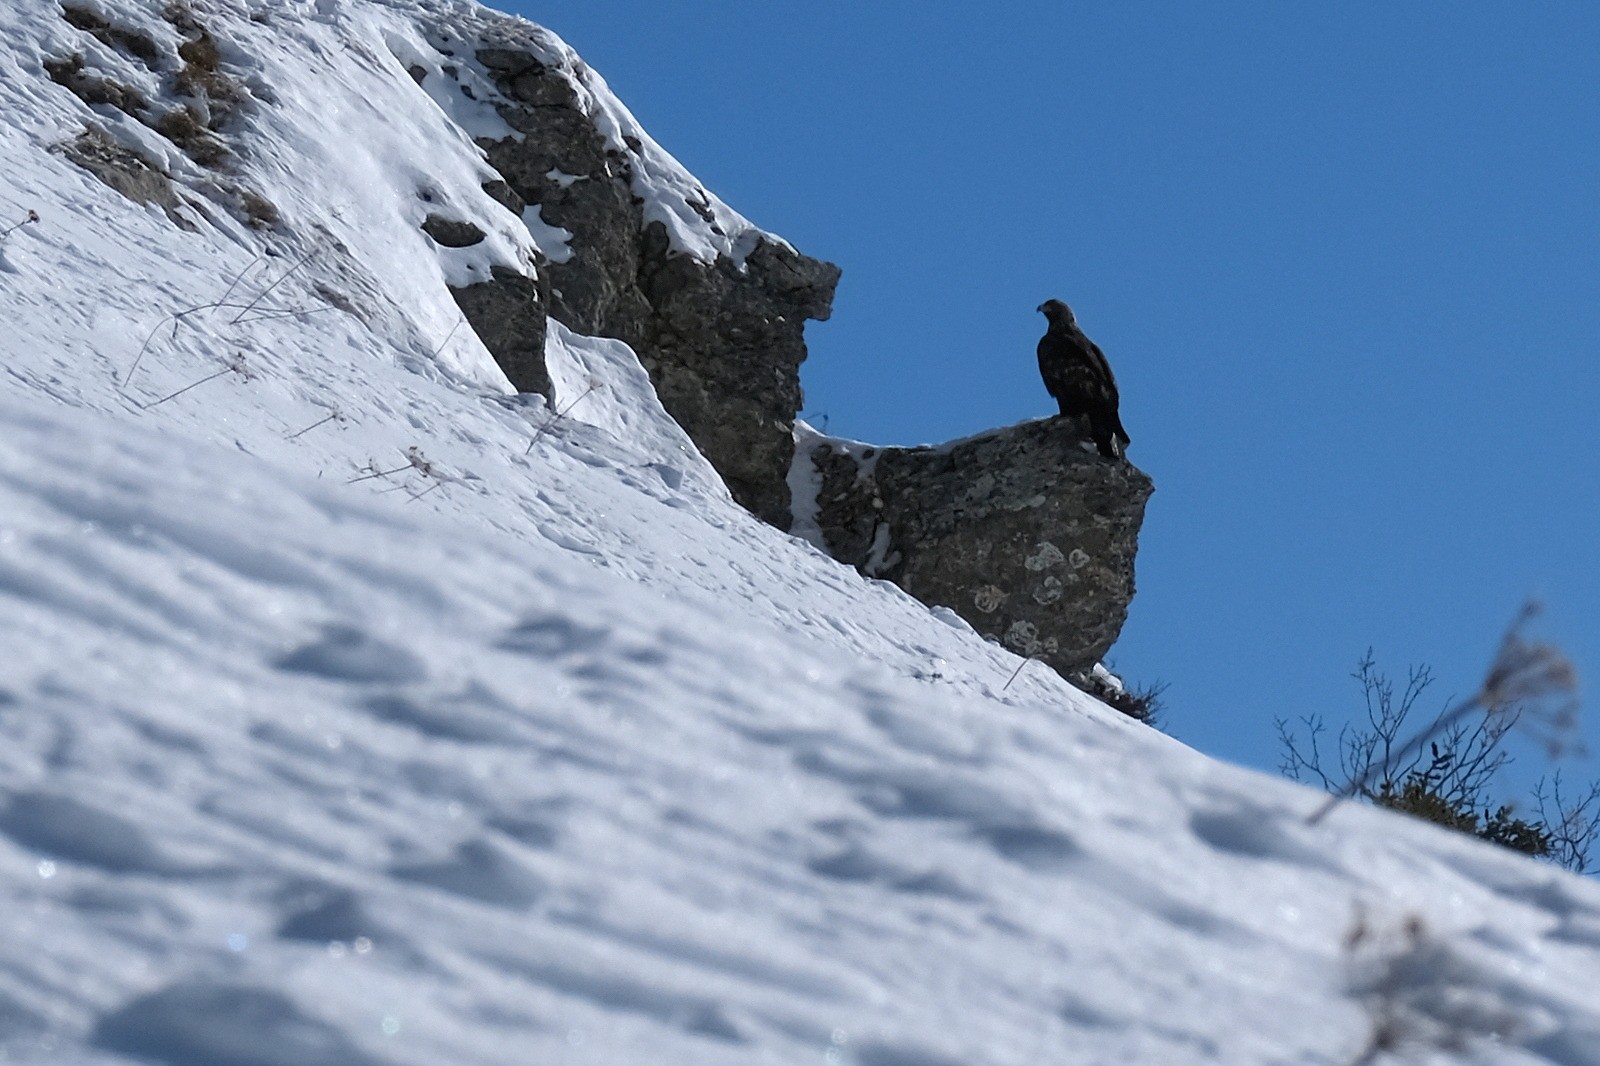 Sur un promontoire rocheux, nous tournant le dos, un aigle royal semble ignorer notre présence...